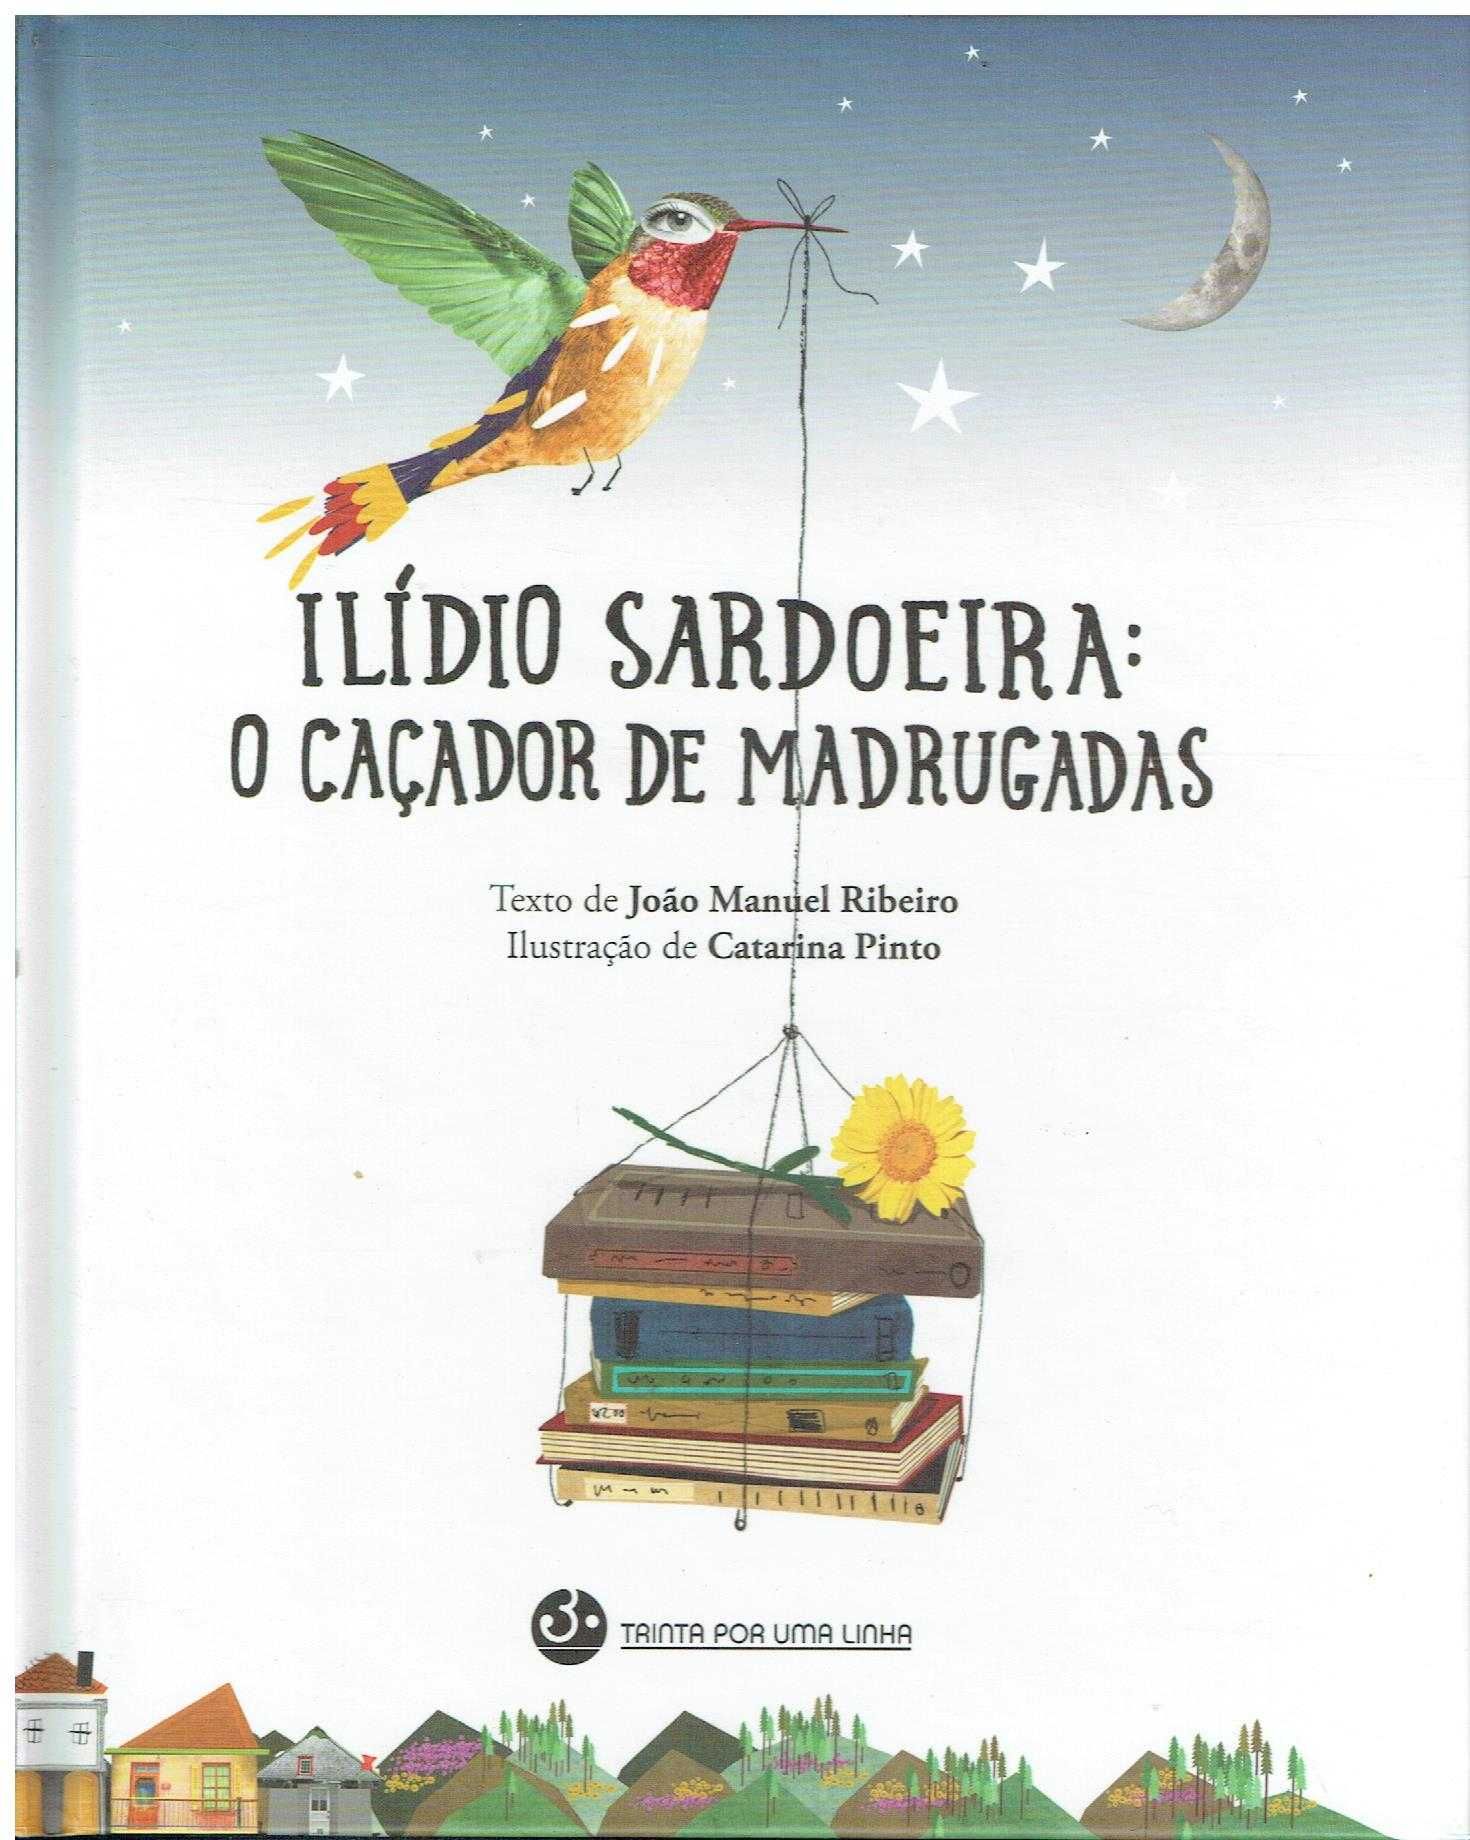 12389

Livros de Ilídio Sardoeira